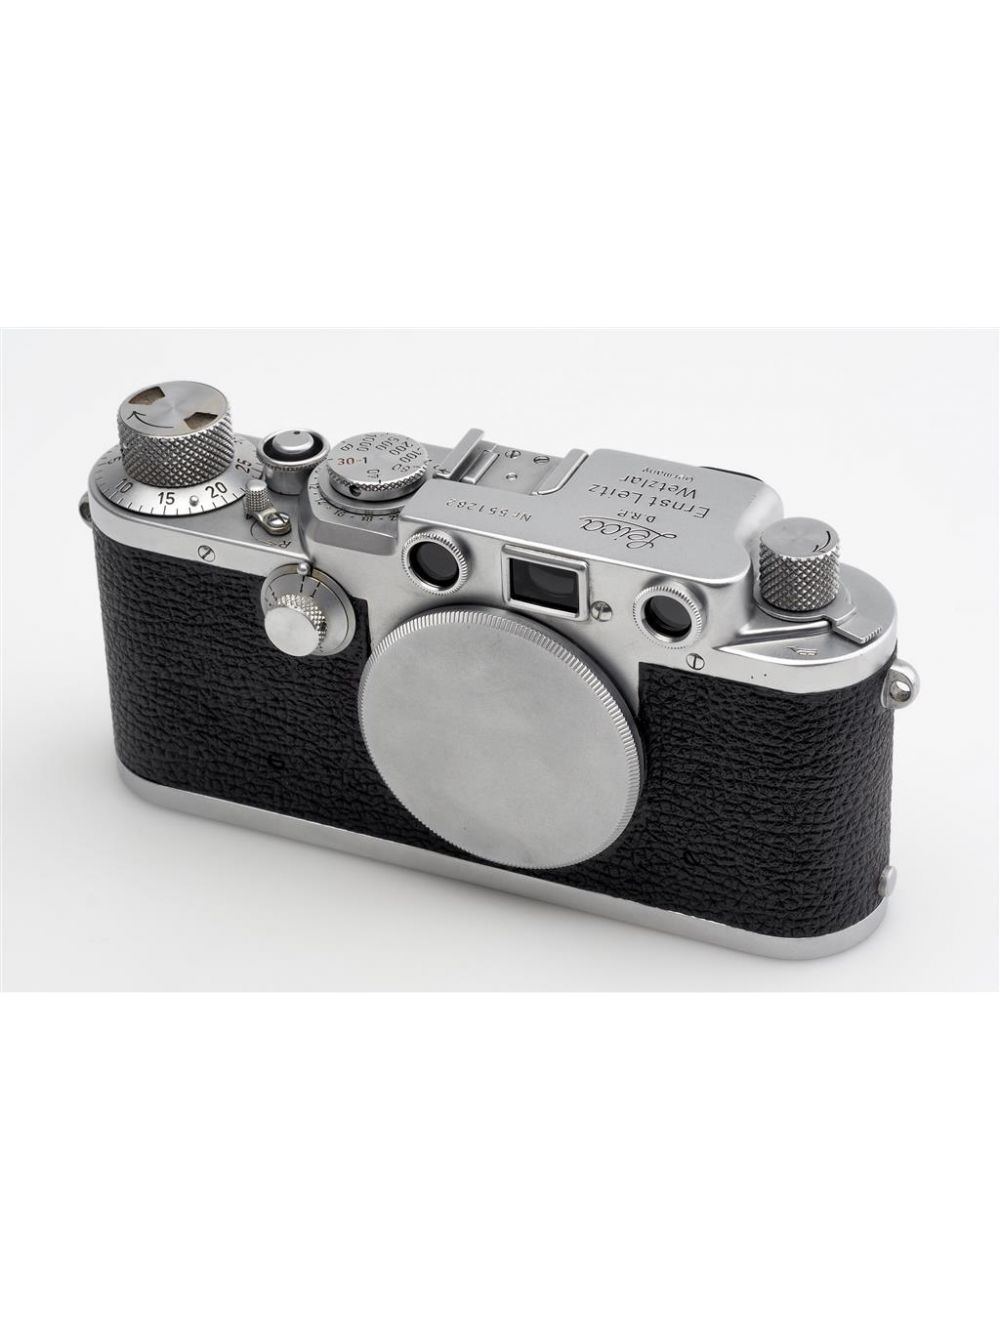 Leitz Leica IIIf Chrome #551282 | JO GEIER - MINT & RARE